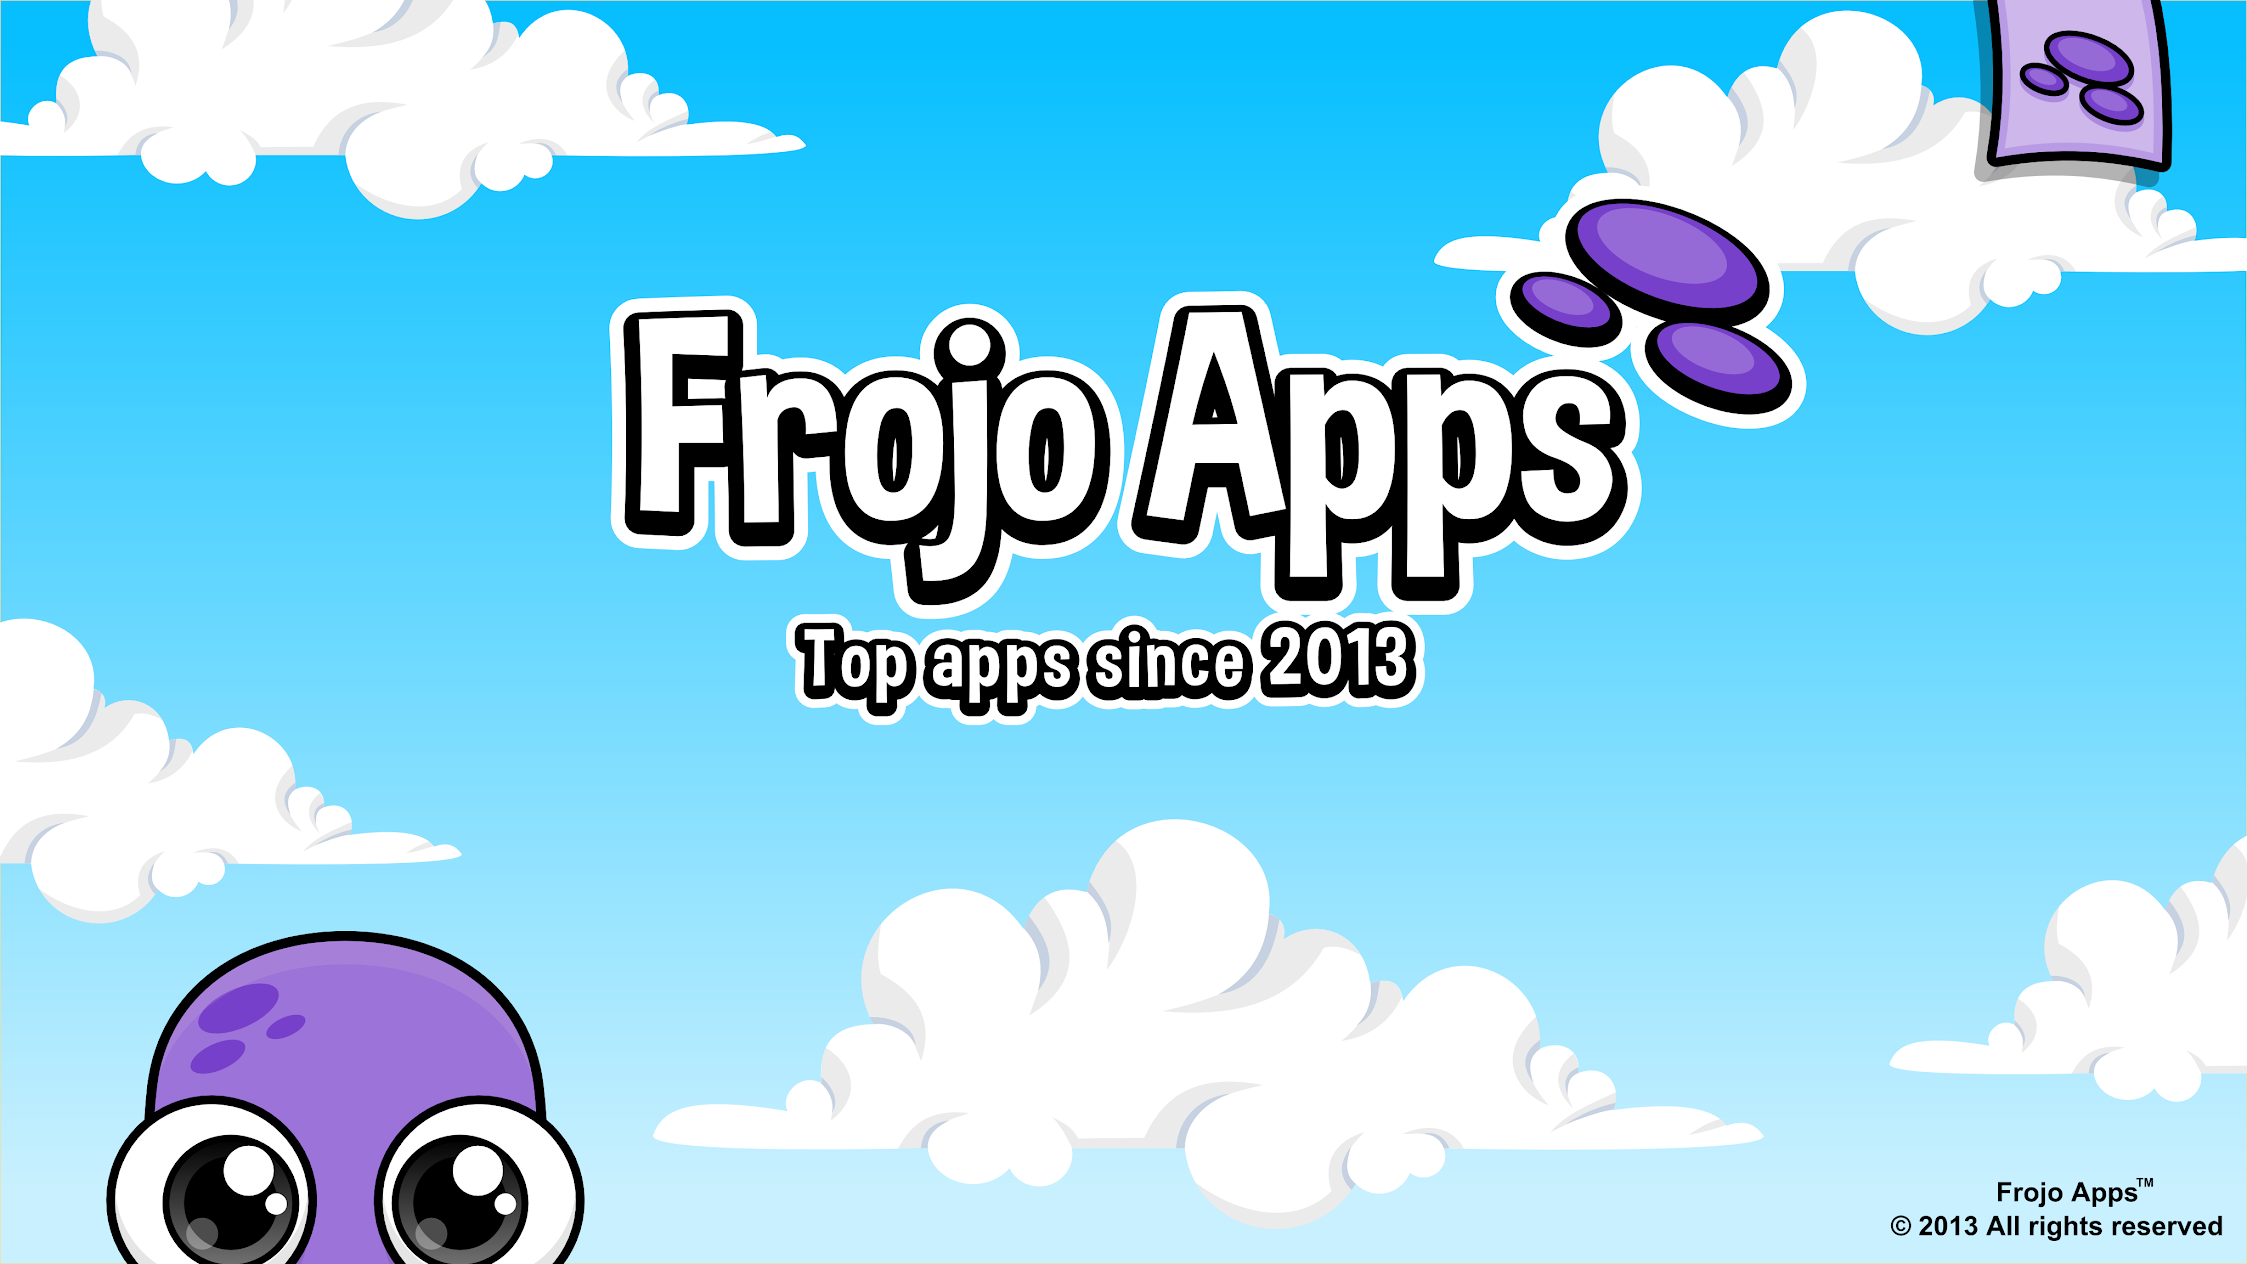 Frojo Apps